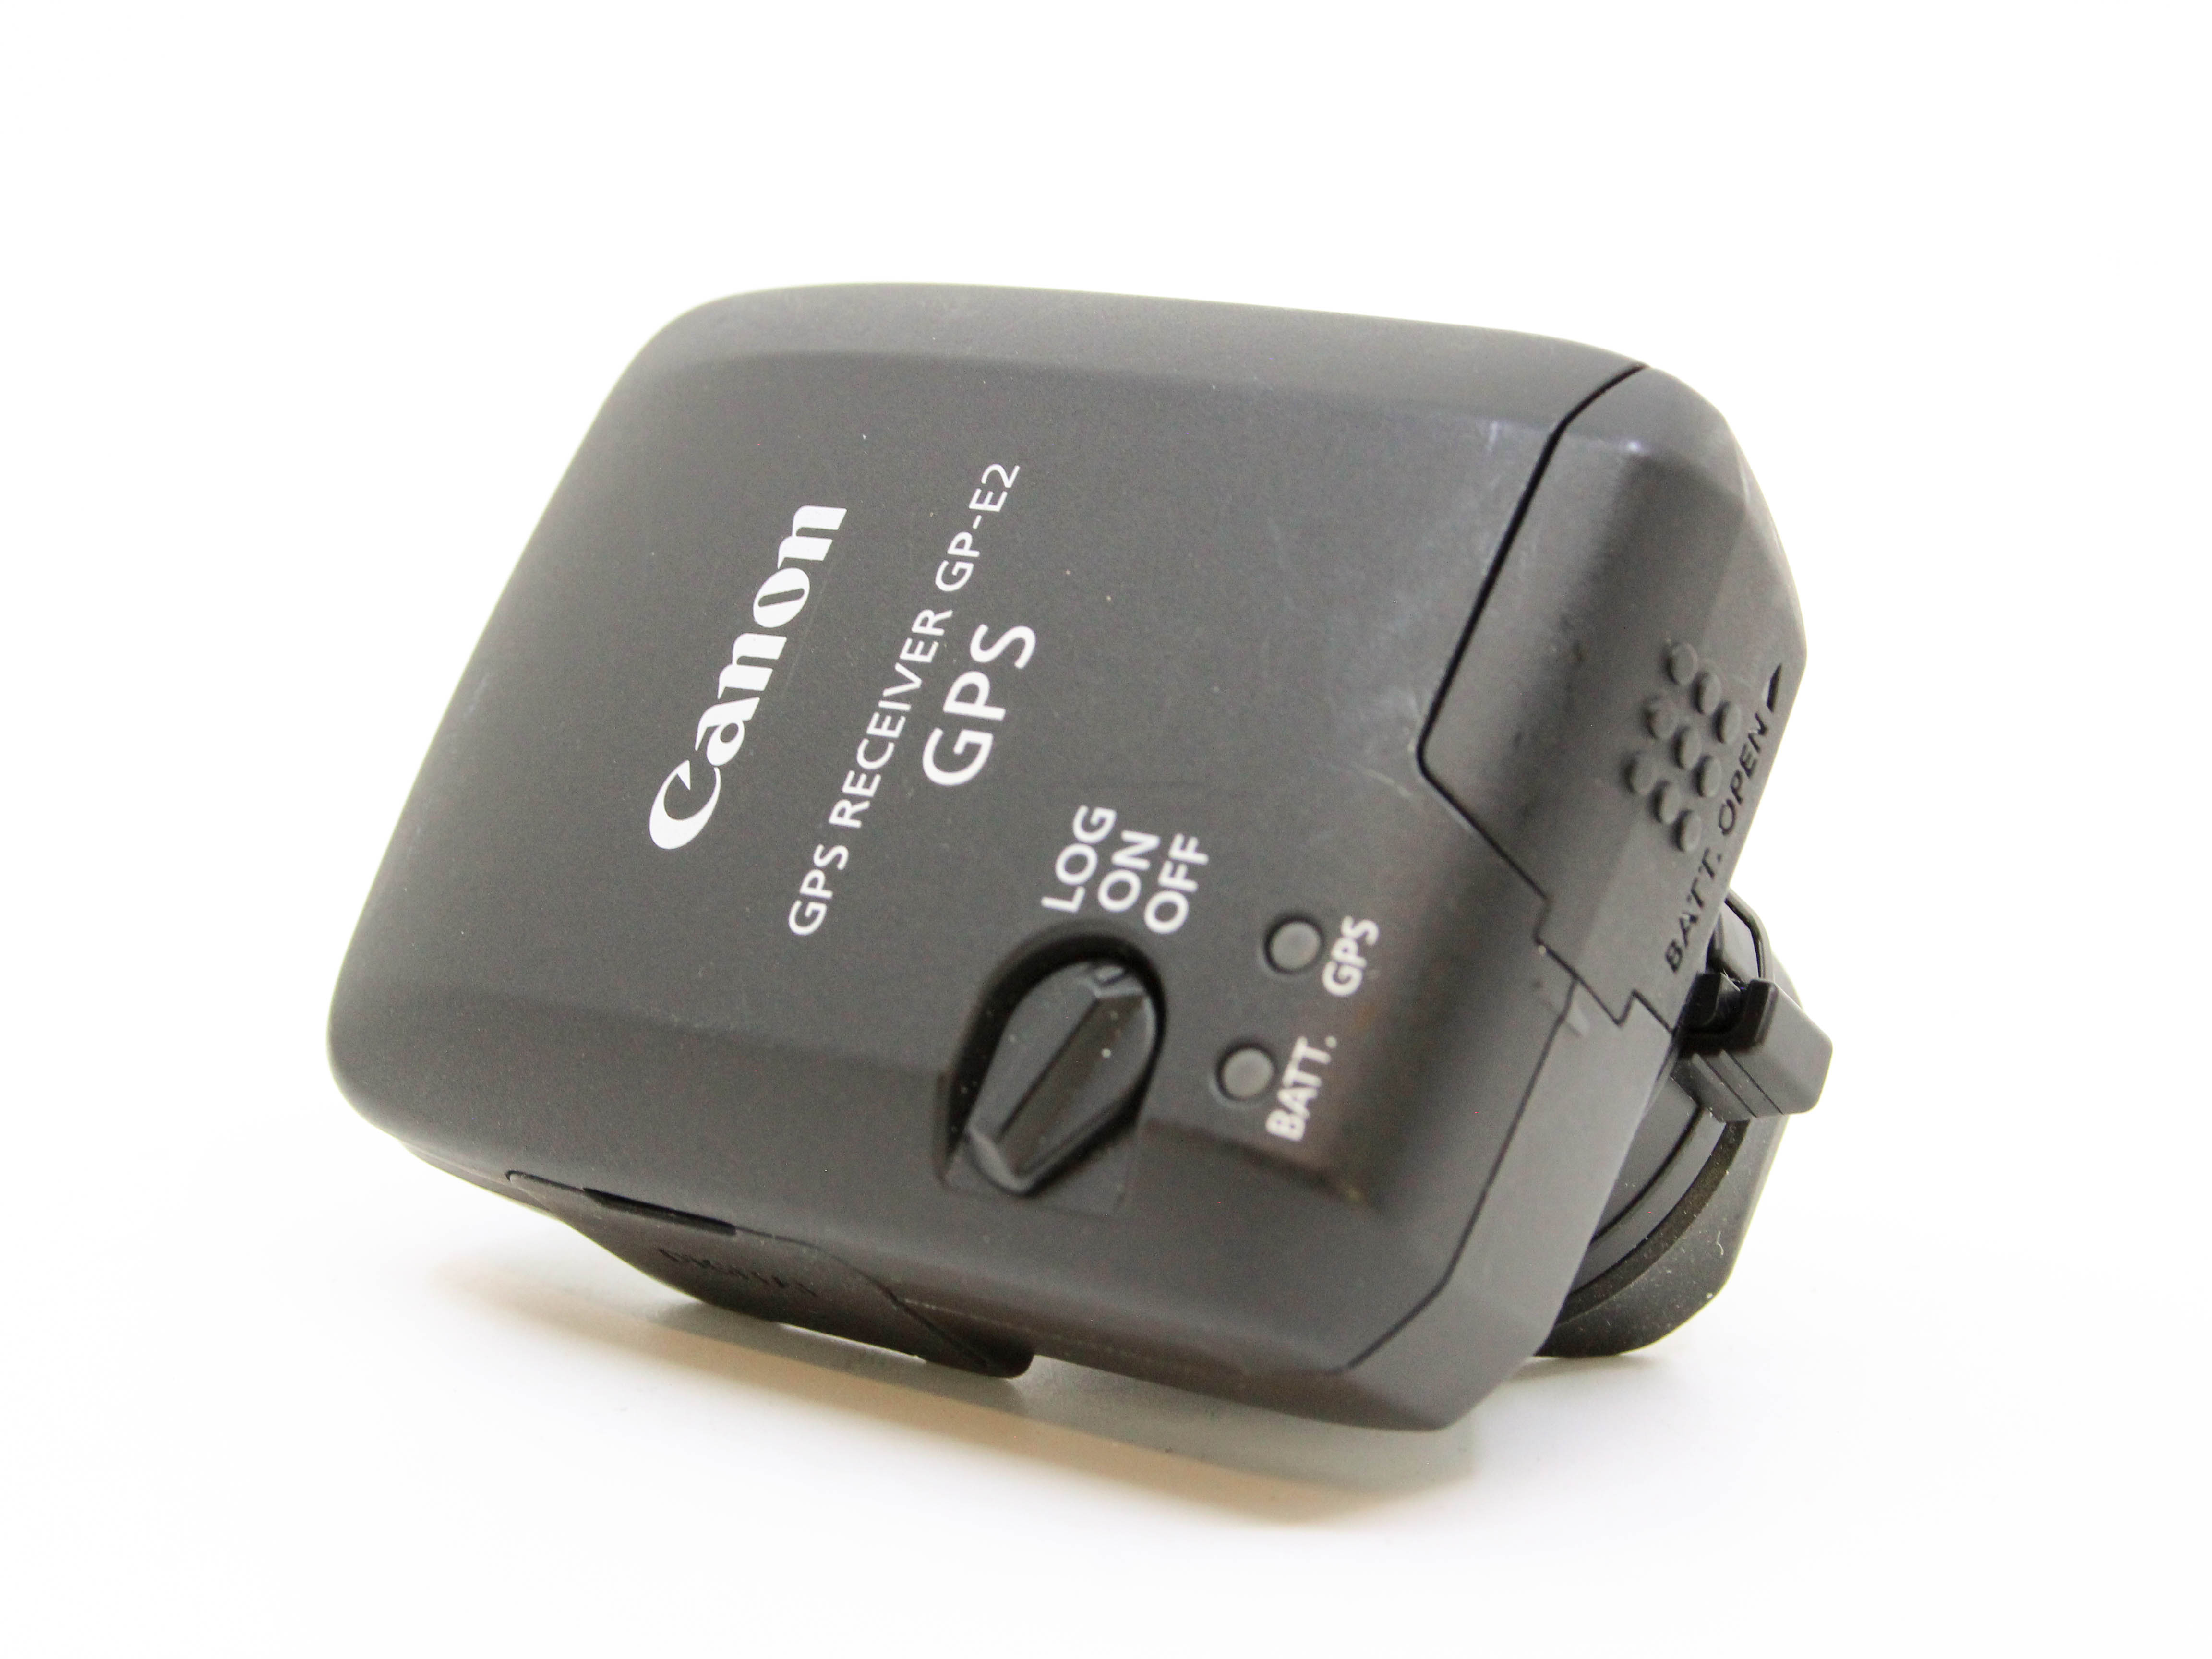 Used Canon GP-E2 GPS Receiver